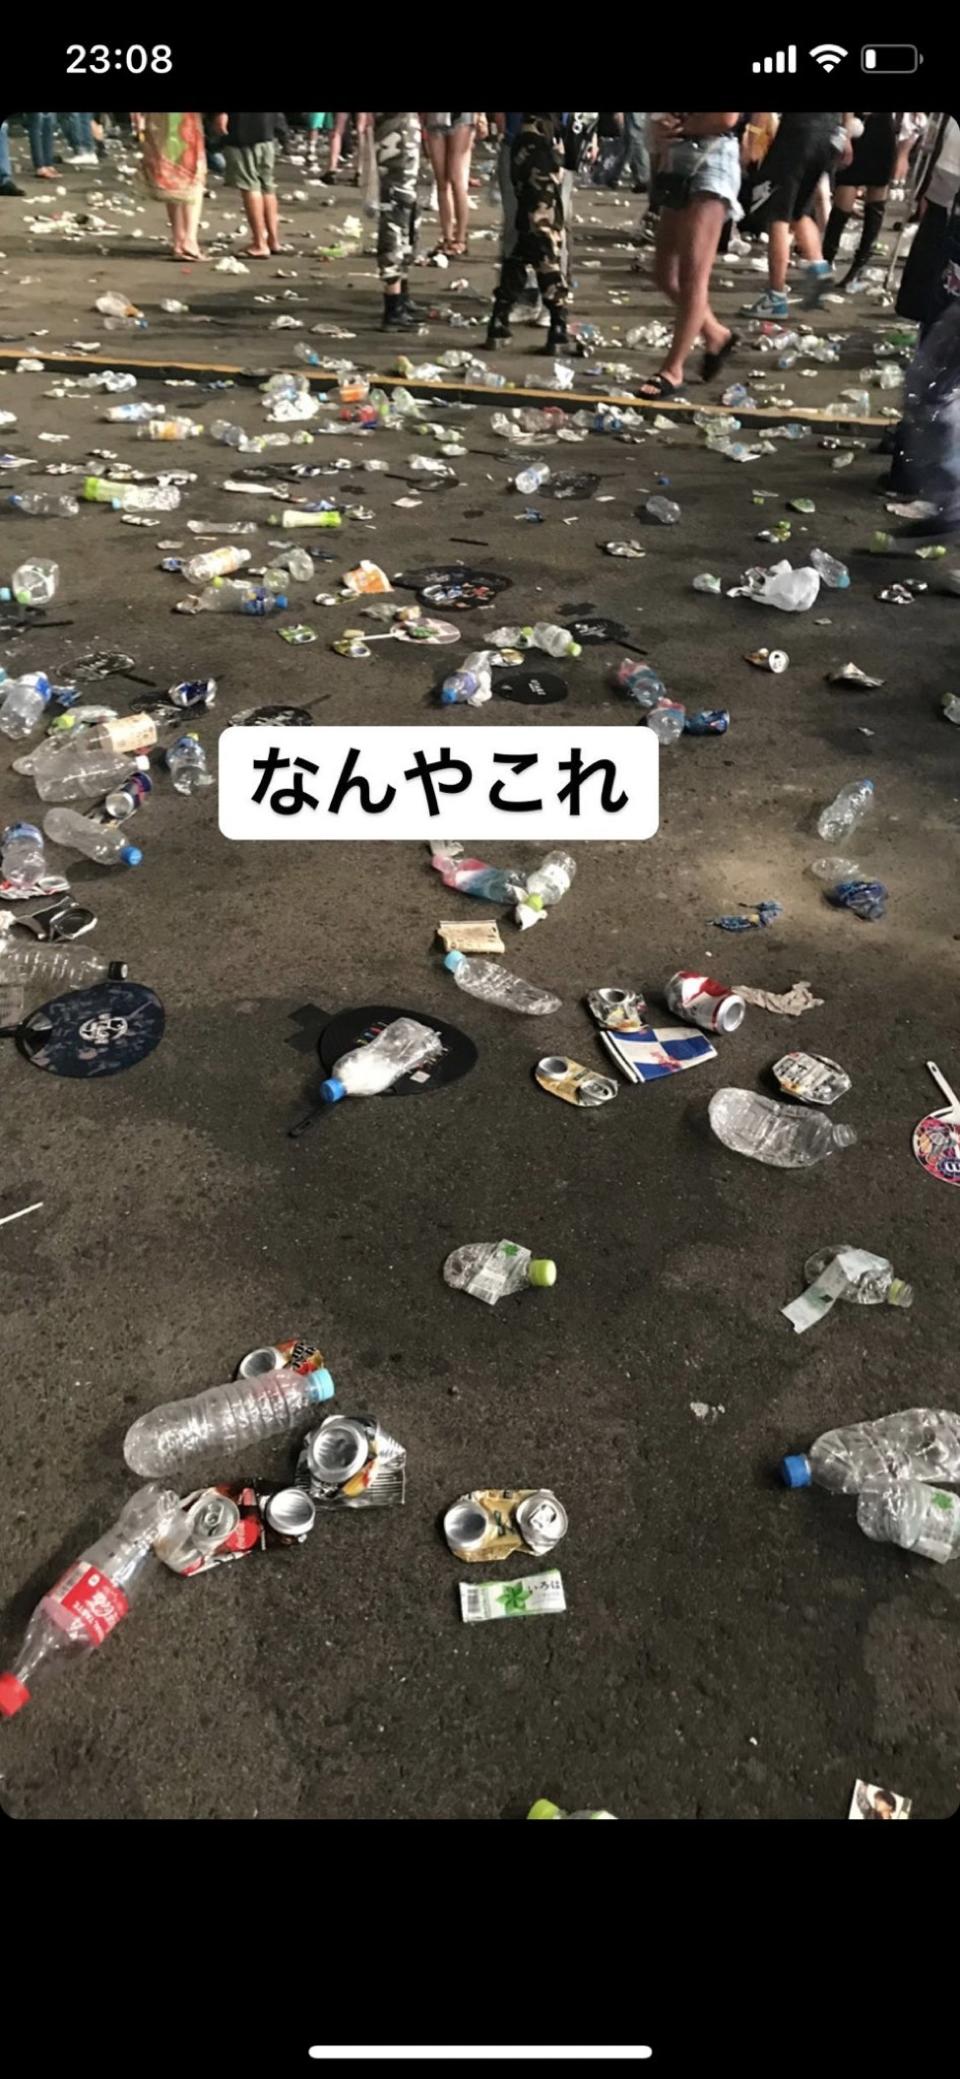 完場後地下滿布垃圾，與平日日本人就有規矩的印象大不同。(n_fny63@twitter)